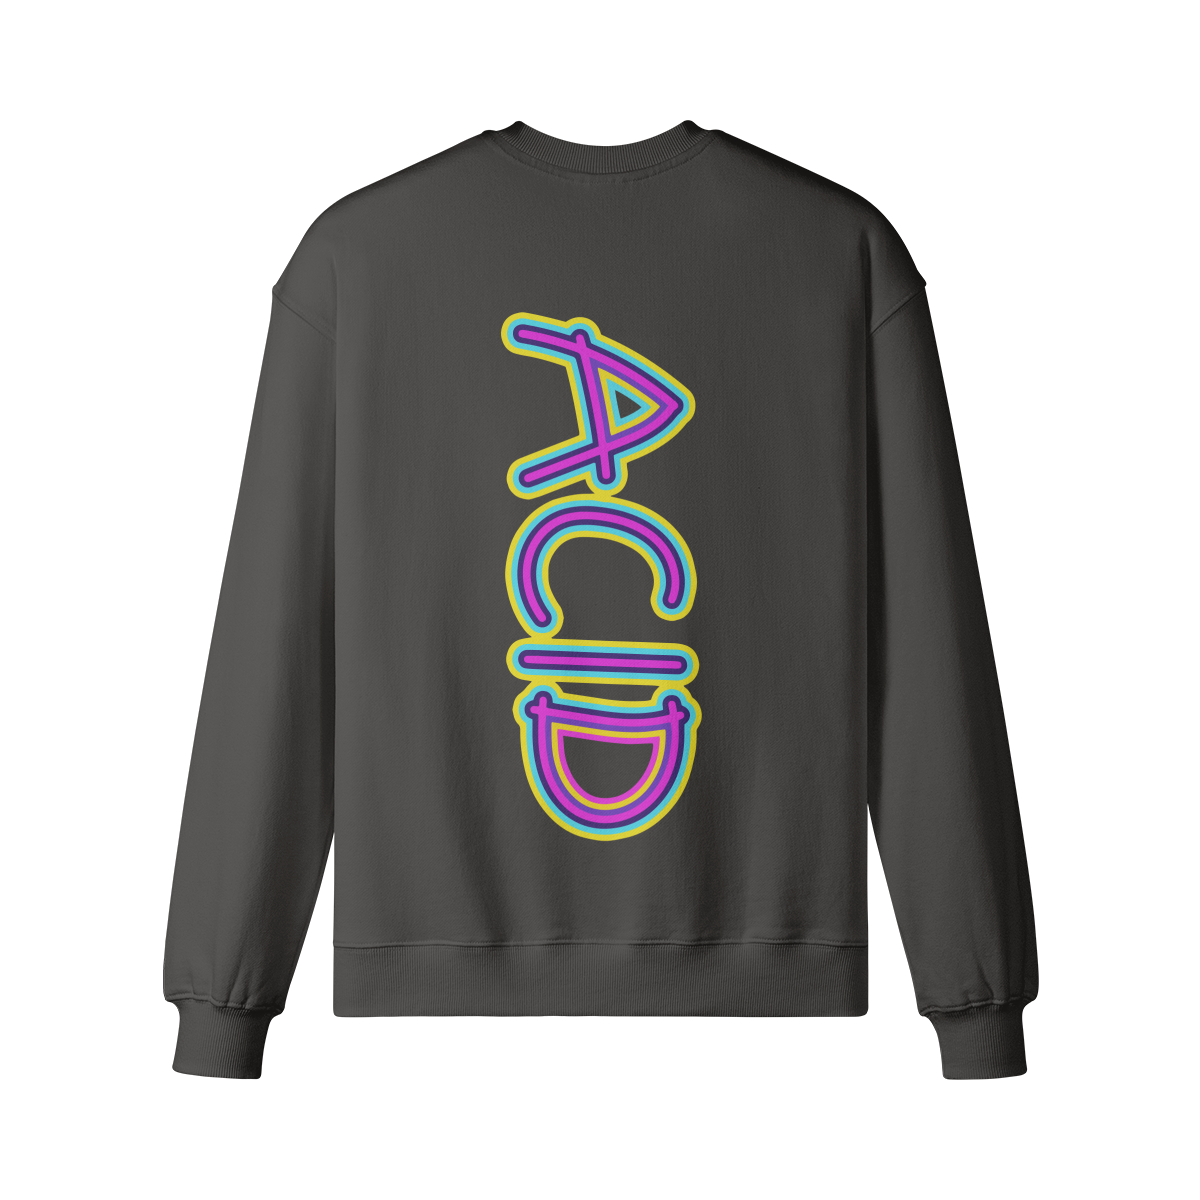 ACID (BACK PRINT) - Unisex Oversized Sweatshirt - back -charcoal gray